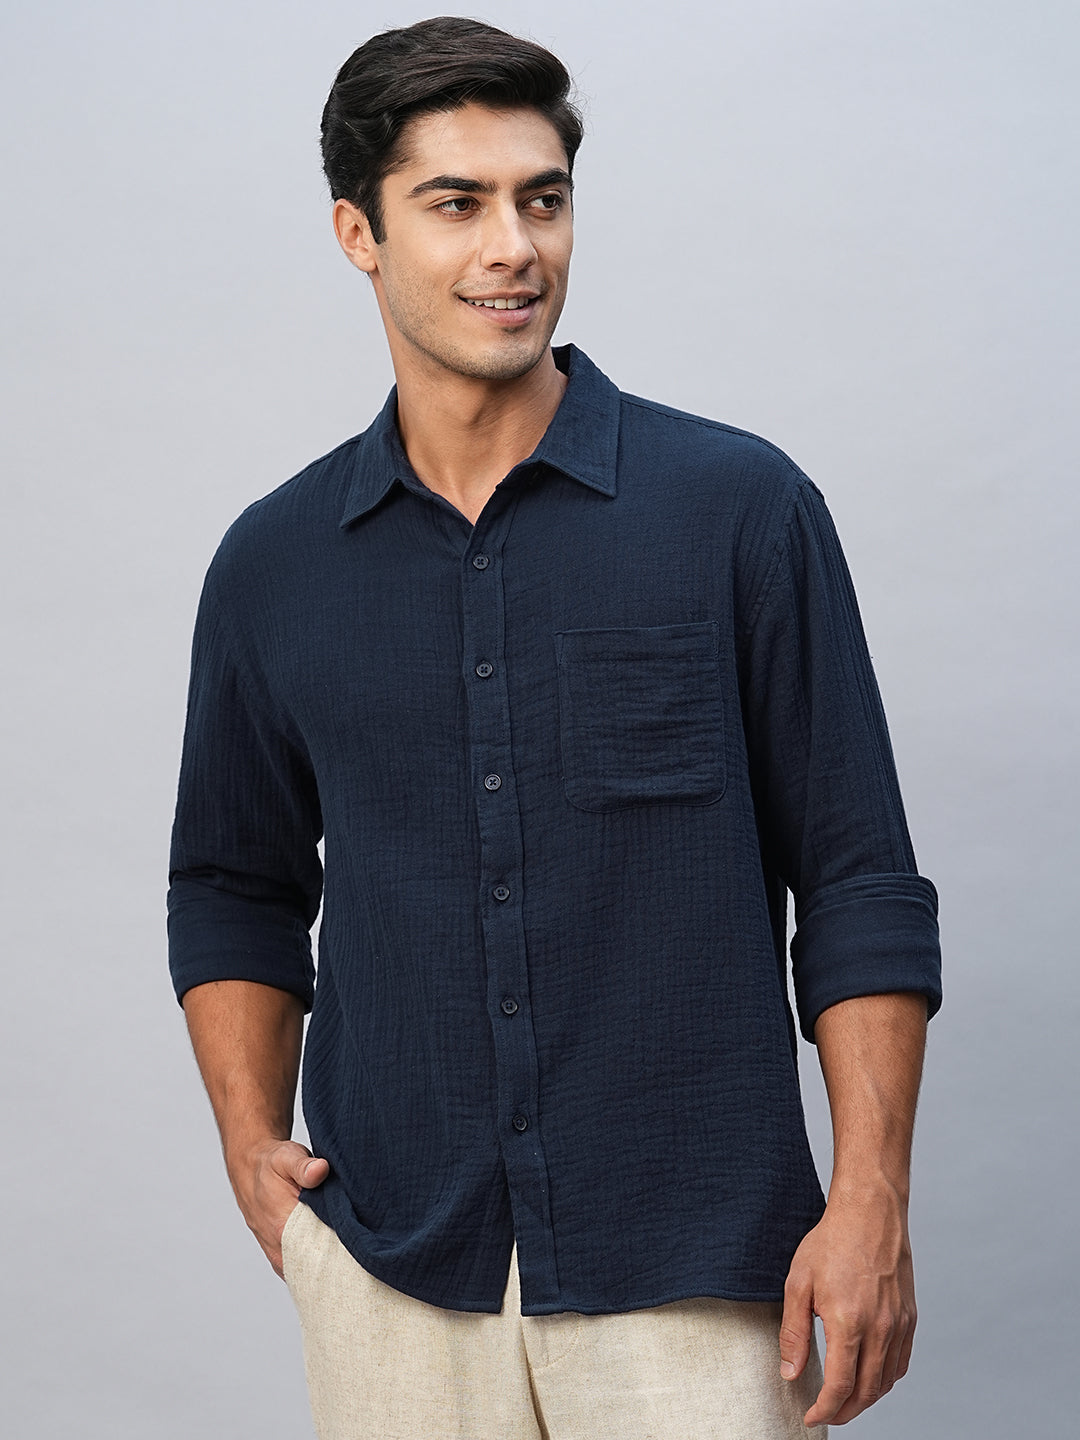 Men's Navy Cotton Regular Fit Shirt